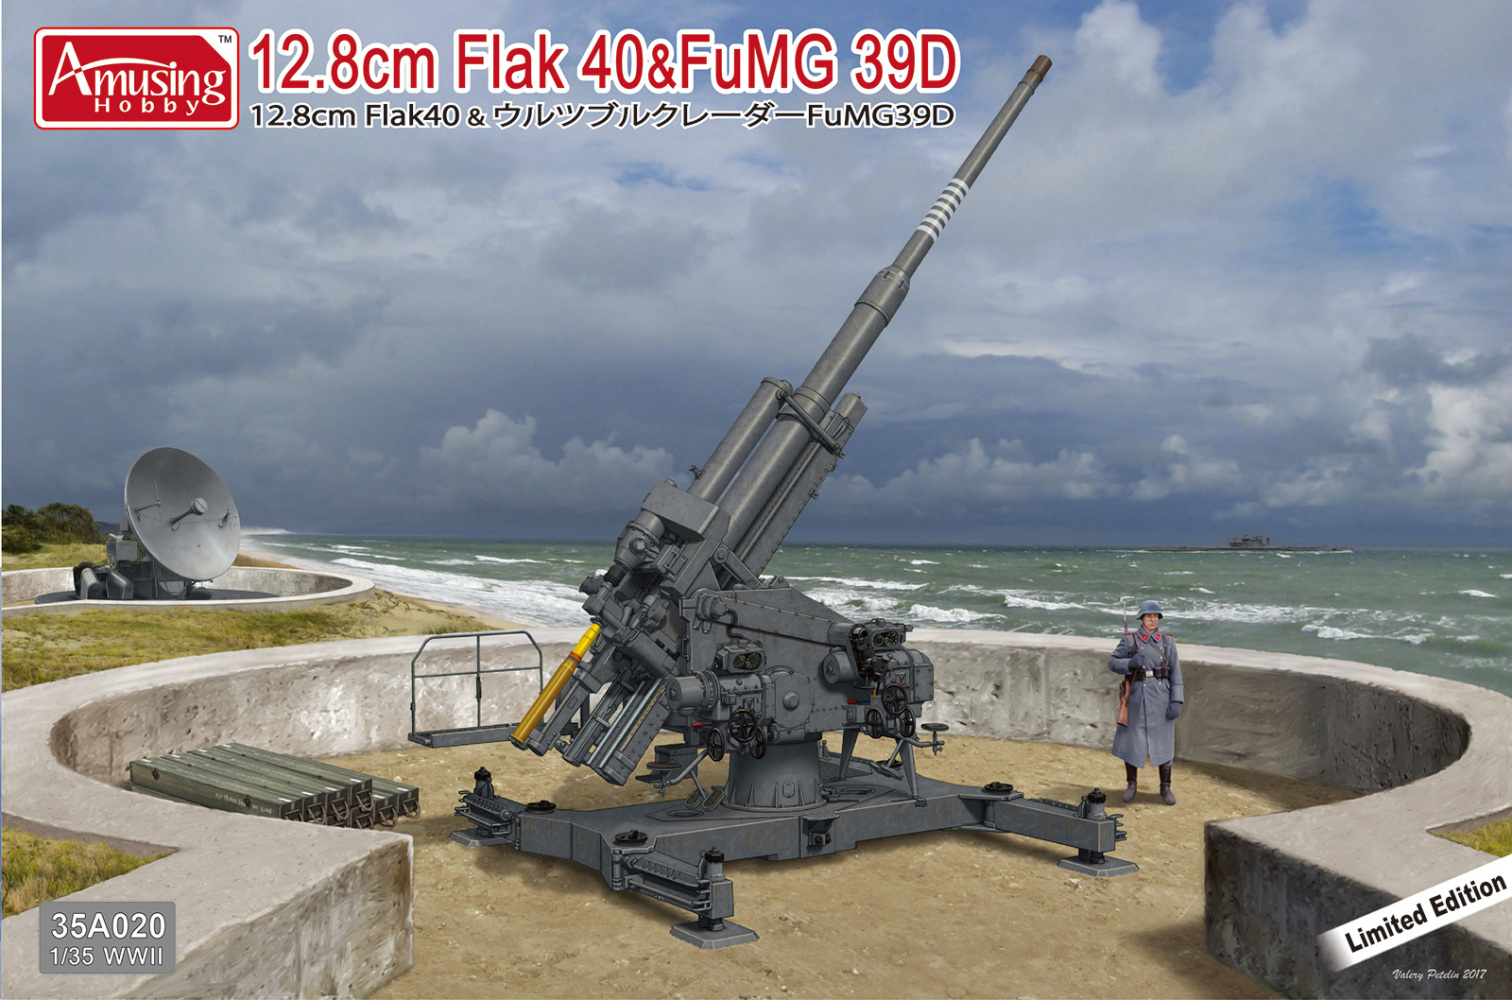 FLAK 40&FUMG 39D